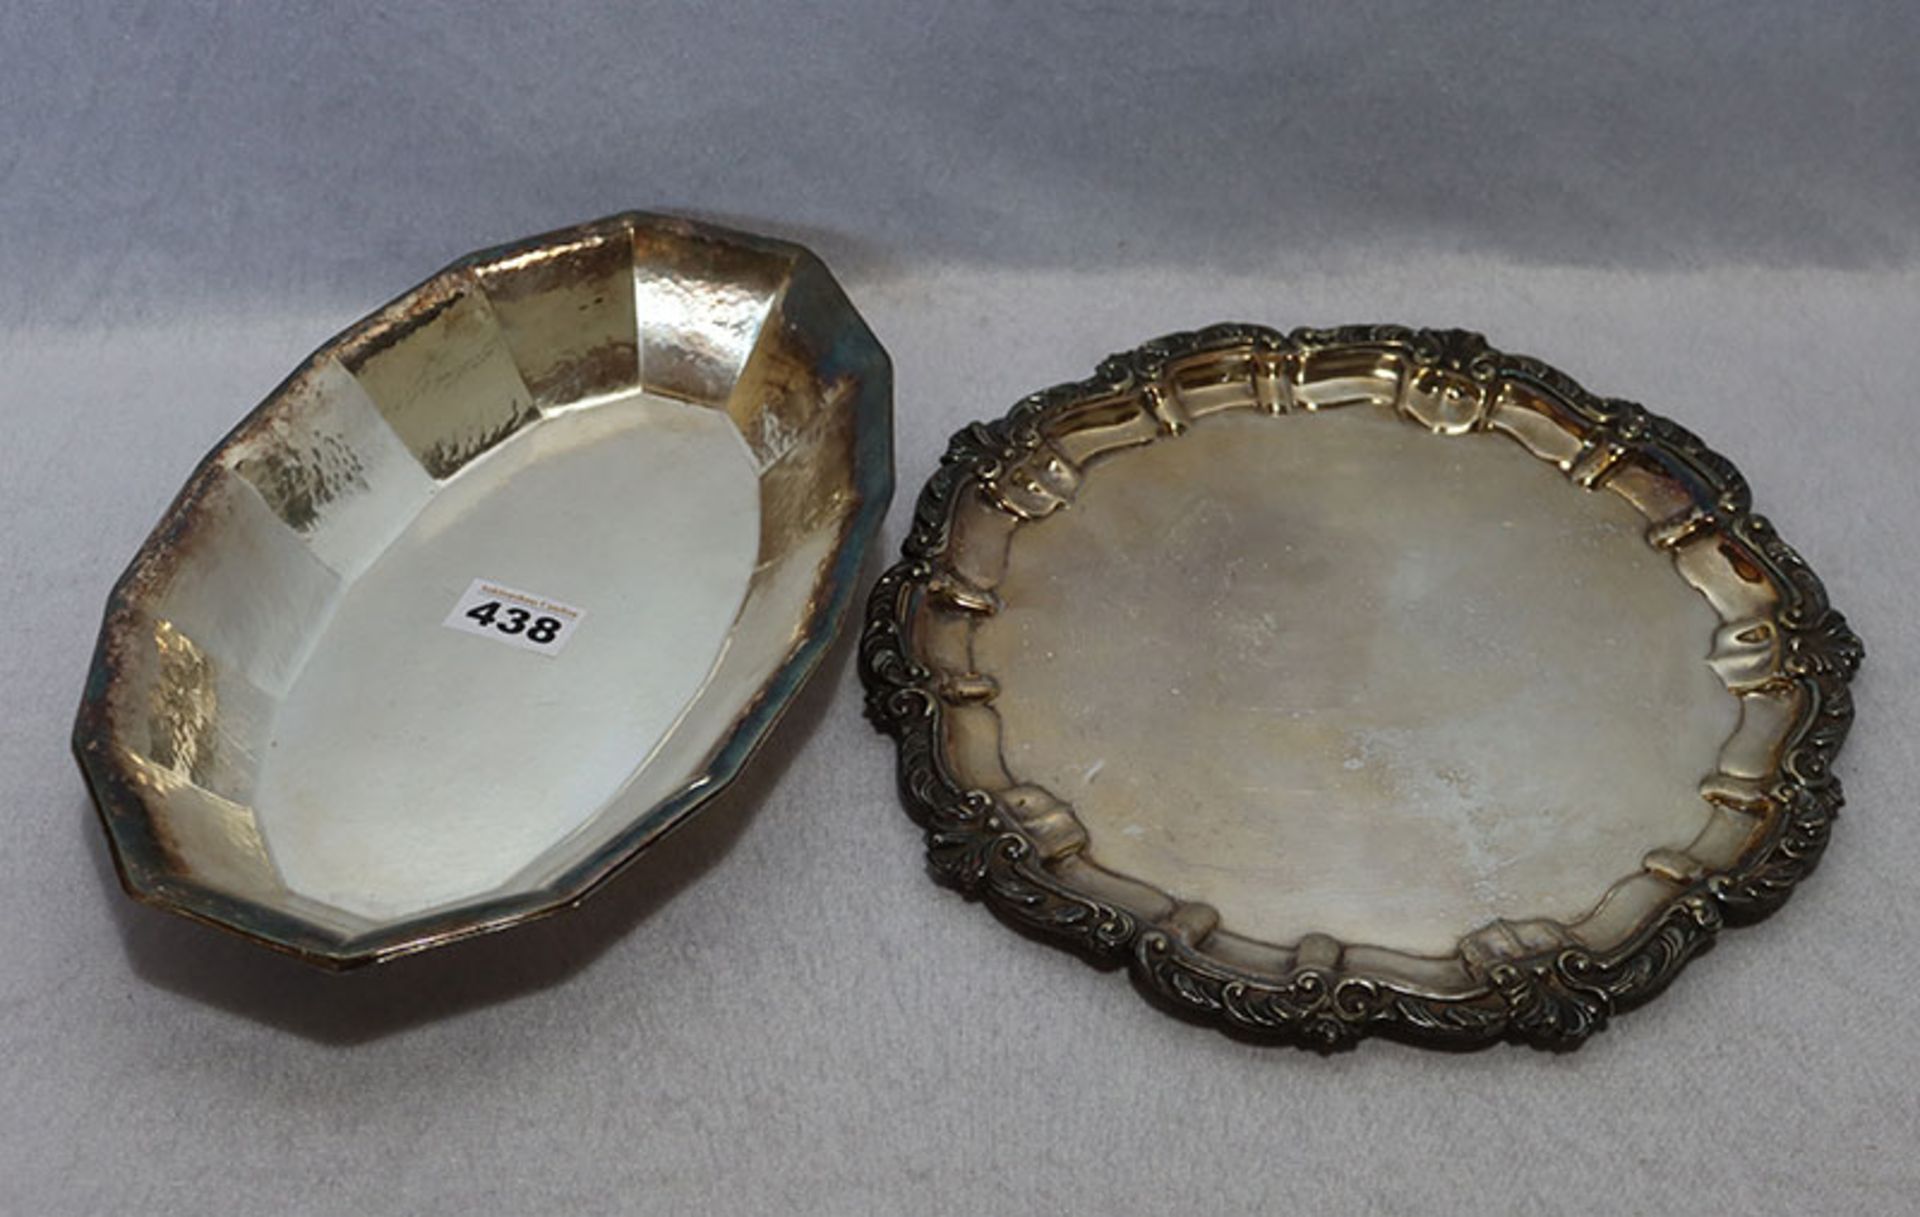 Rundes Tablett mit Reliefrand, D 30 cm, und ovale Schale, L 31 cm, B 21 cm, beides versilbert,